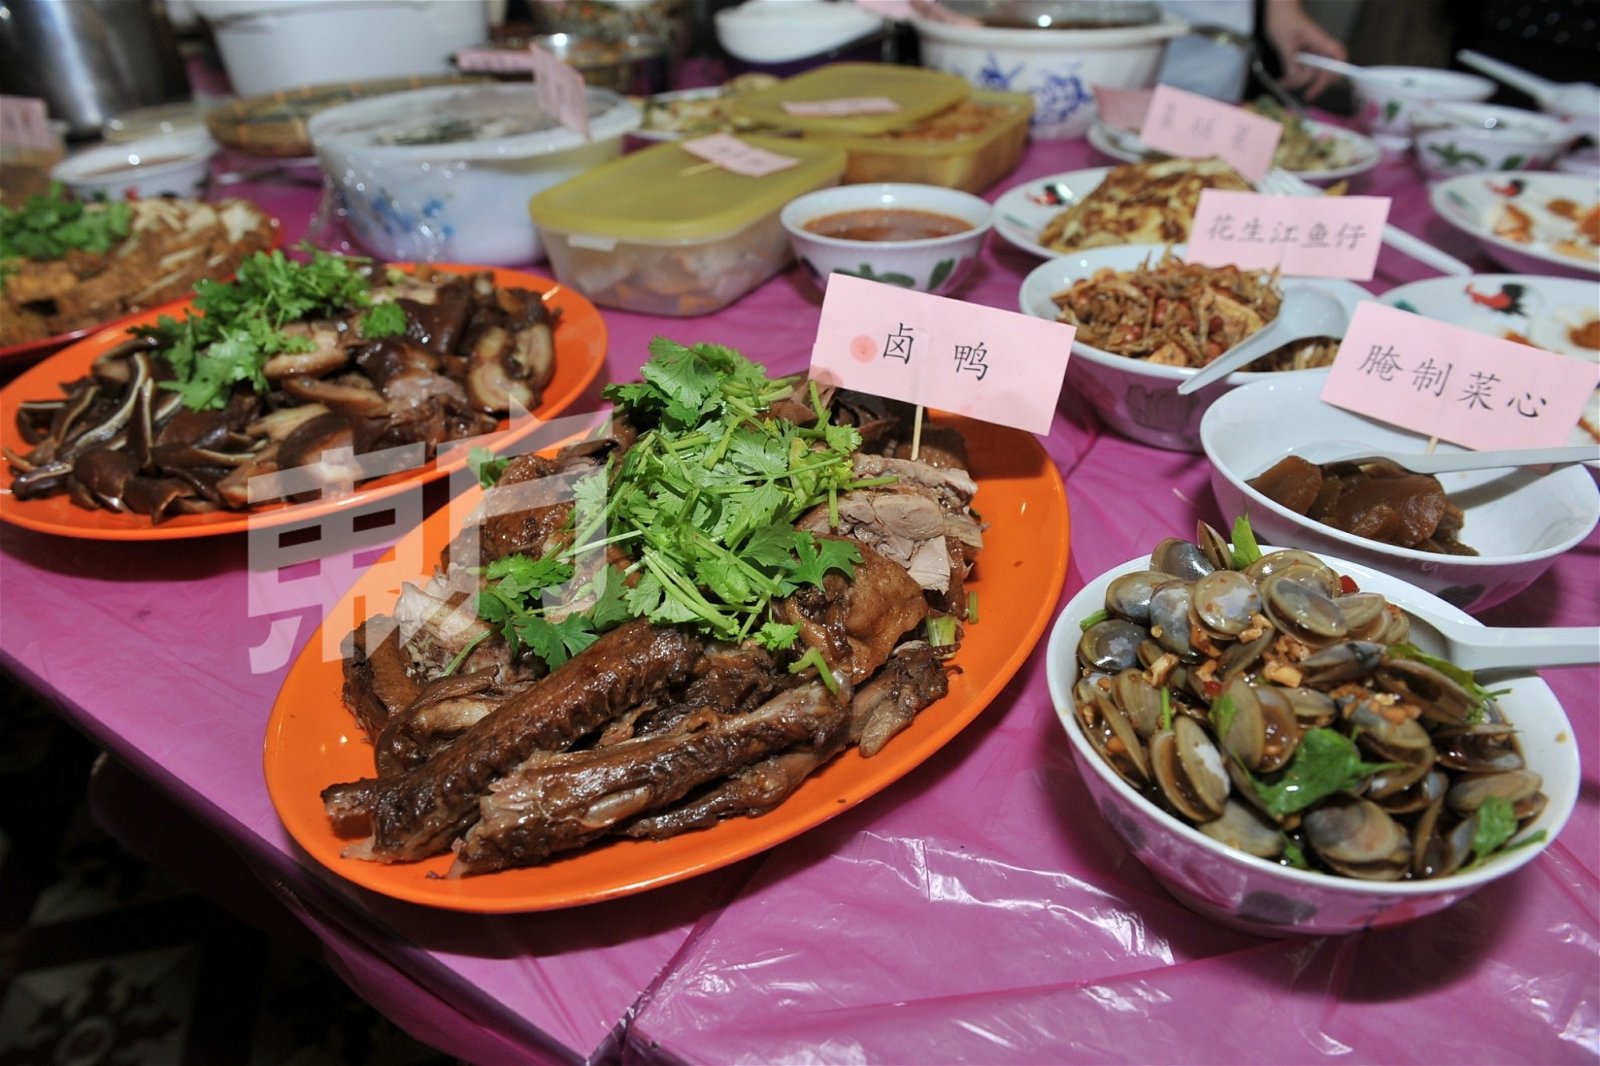 多道潮州传统美食摆在桌，如卤鸭、卤料、潮州粥及腌制啦啦等配料，让乡亲们共享“潮籍”美味。 （摄影：连国强）